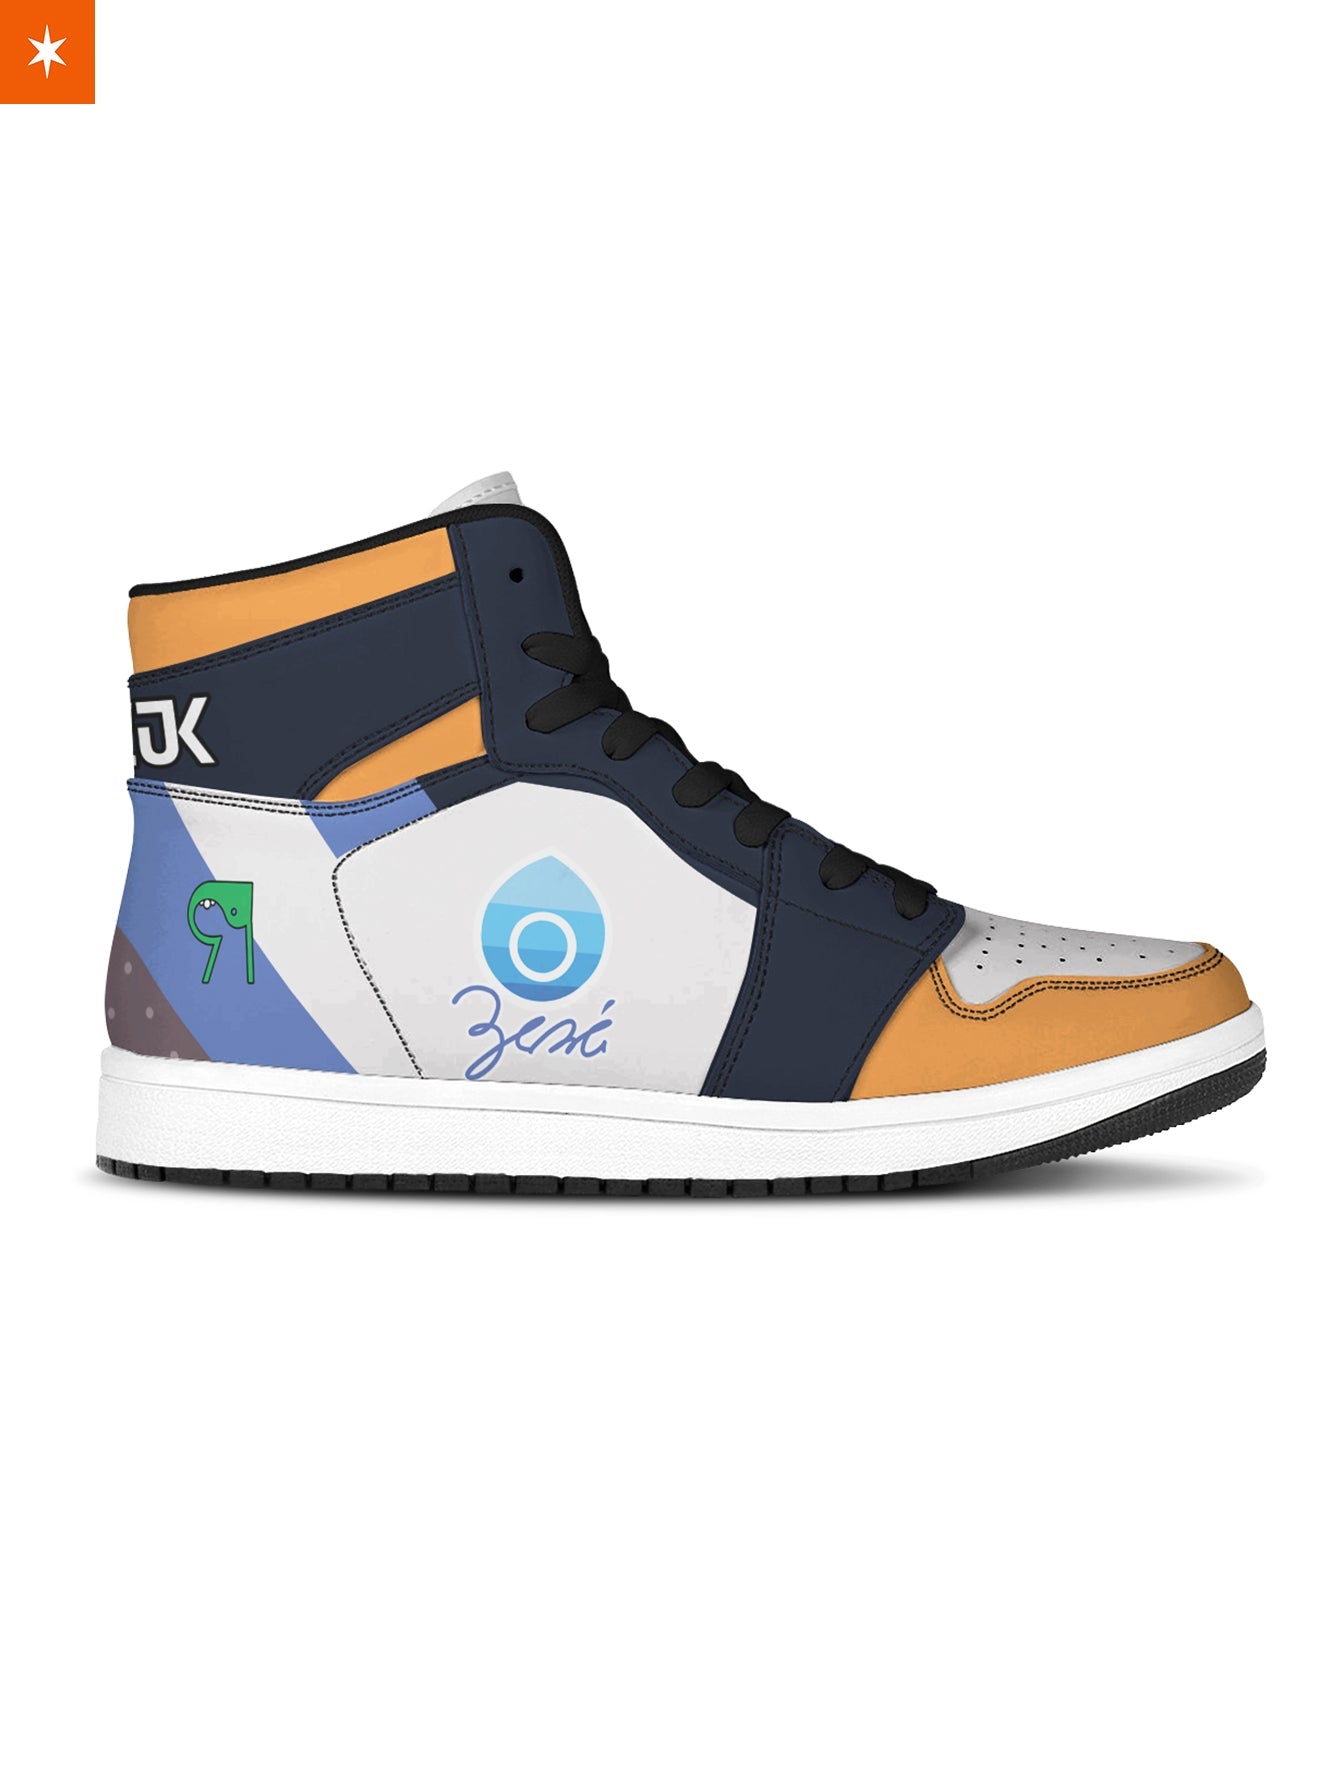 Fandomaniax - [Buy 1 Get 1 SALE] Poke Water Uniform JD Sneakers